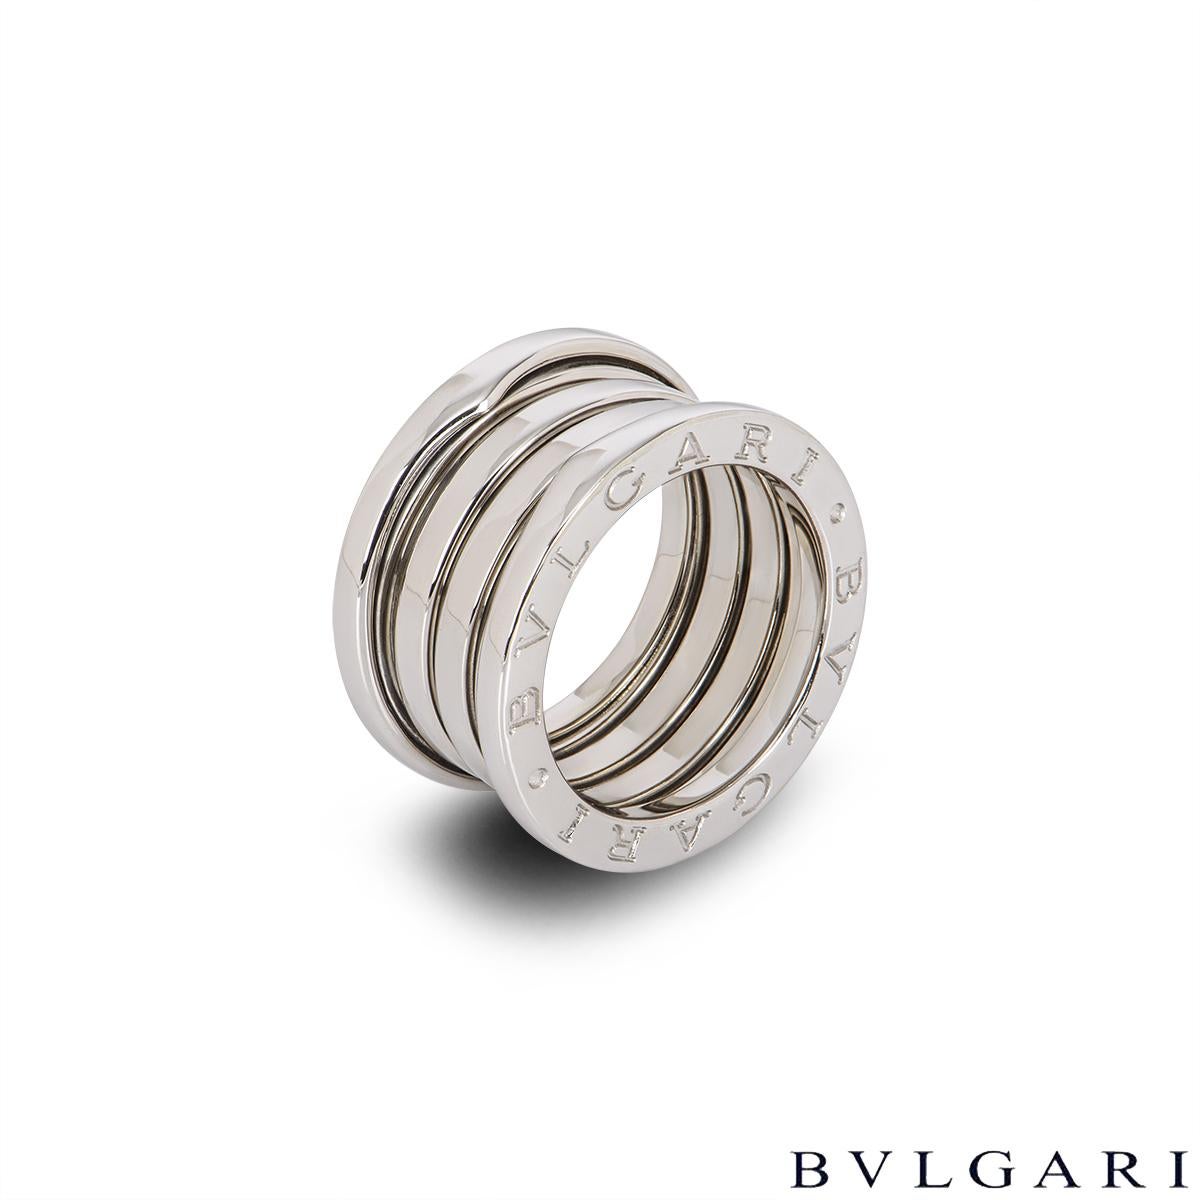 Bague classique en or blanc 18 carats de Bvlgari, issue de la collection B.Zero1. La bague se compose de 3 anneaux au design en spirale avec le logo iconique 'Bvlgari' gravé sur les bords extérieurs. La bague est de taille K.K. - EU 50 et pèse 11,5